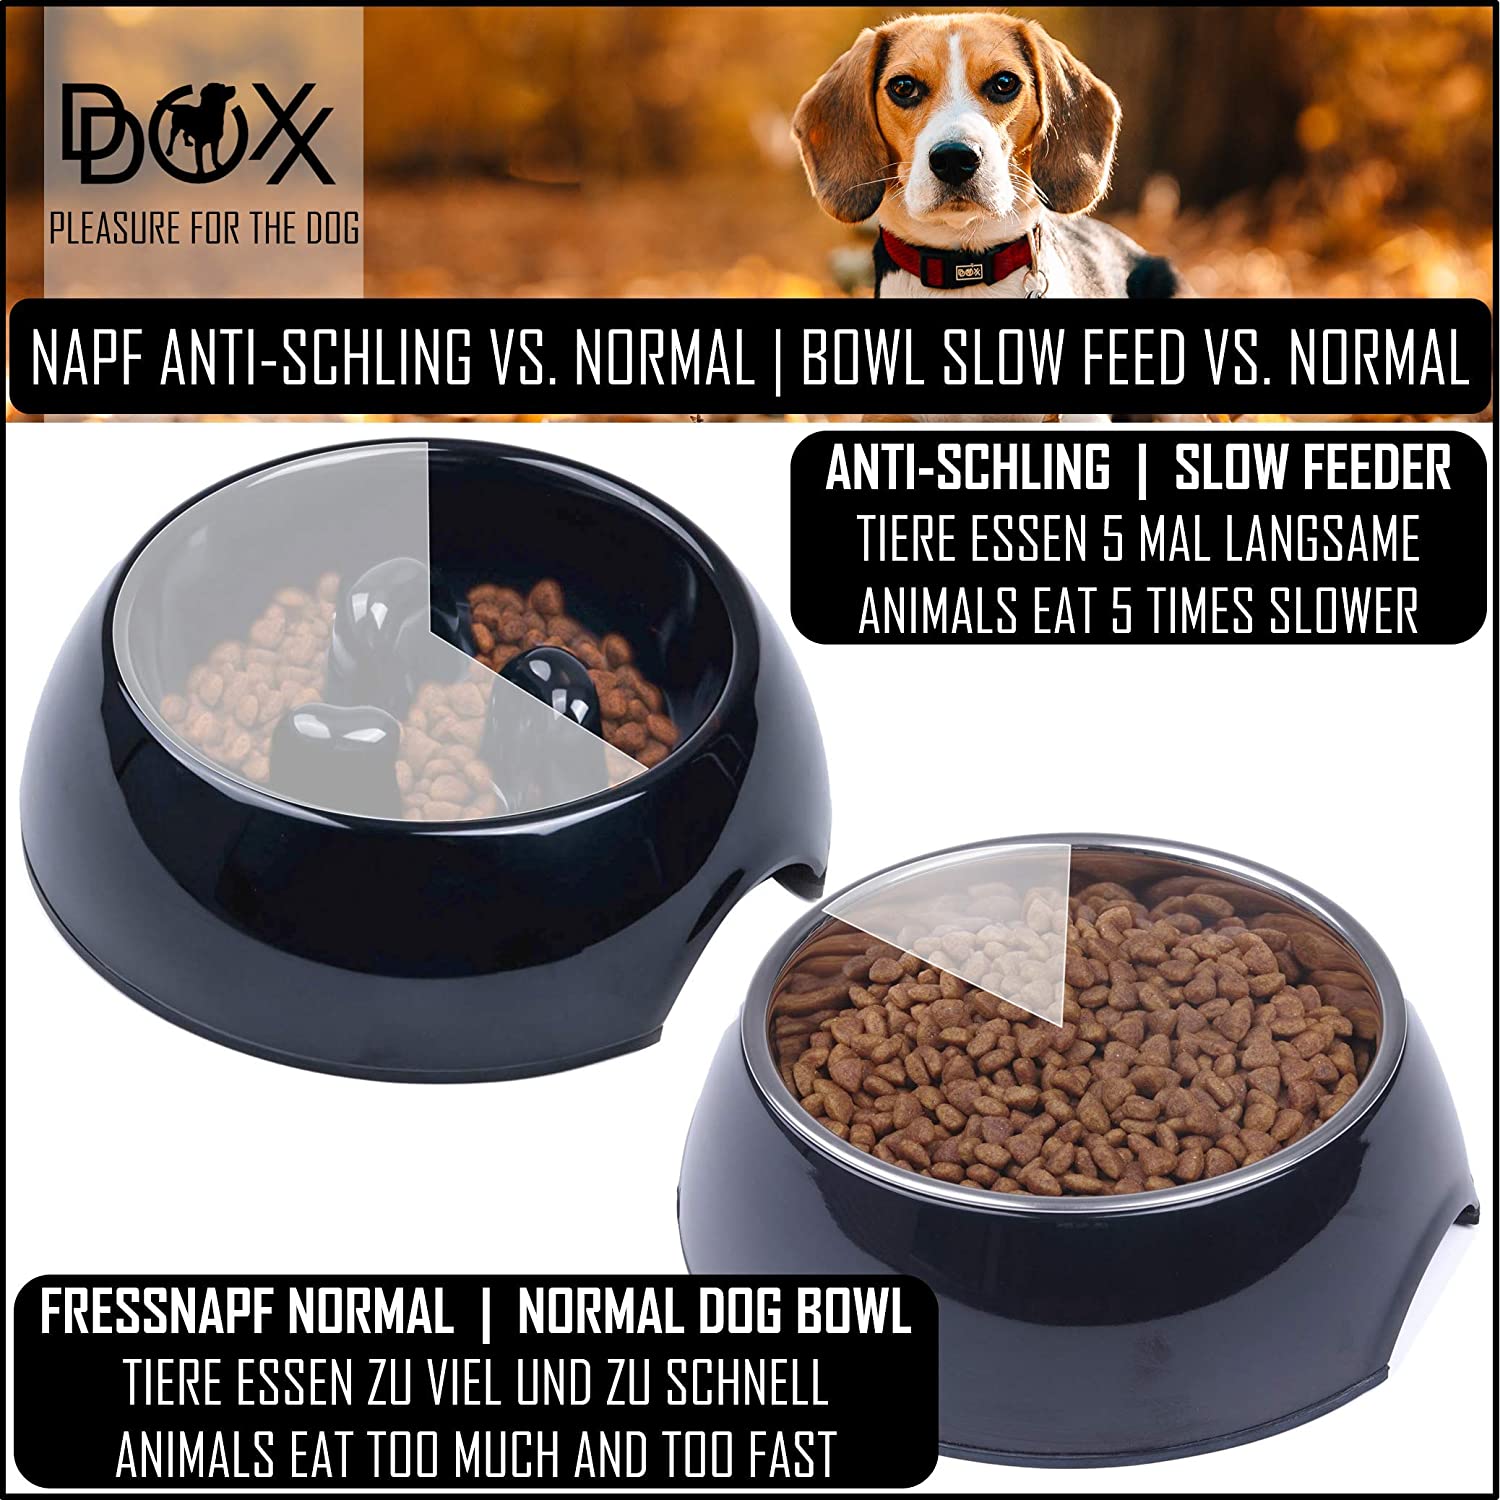  DDOXX Comedero Antivoracidad Perro, Antideslizante Tamaños | para Perros Pequeño, Mediano y Grande | Bol Accesorios Melamina Gato Cachorro | Negro, 300 ml 